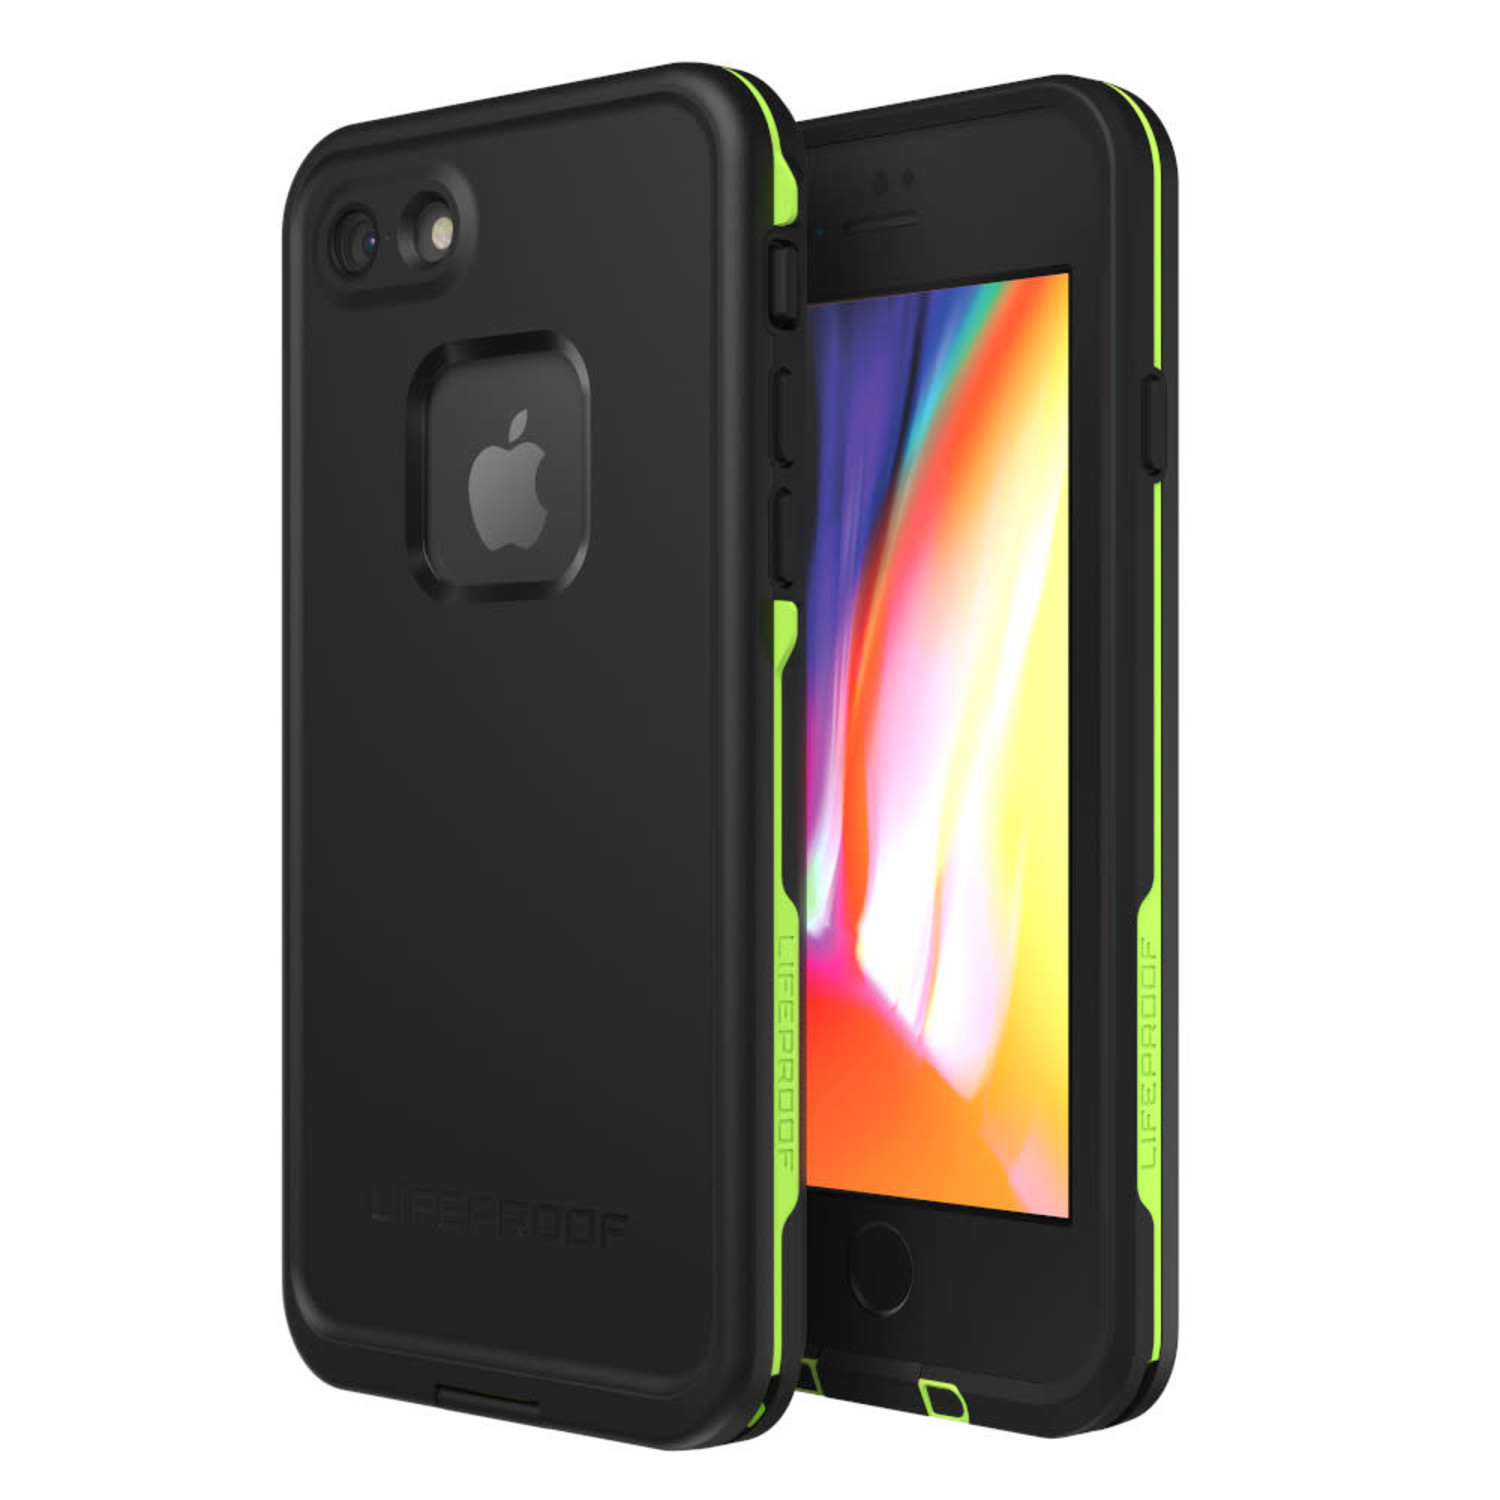 LifeProof FRĒ Waterproof Case Night Lite (Black/Lime) iPhone SE